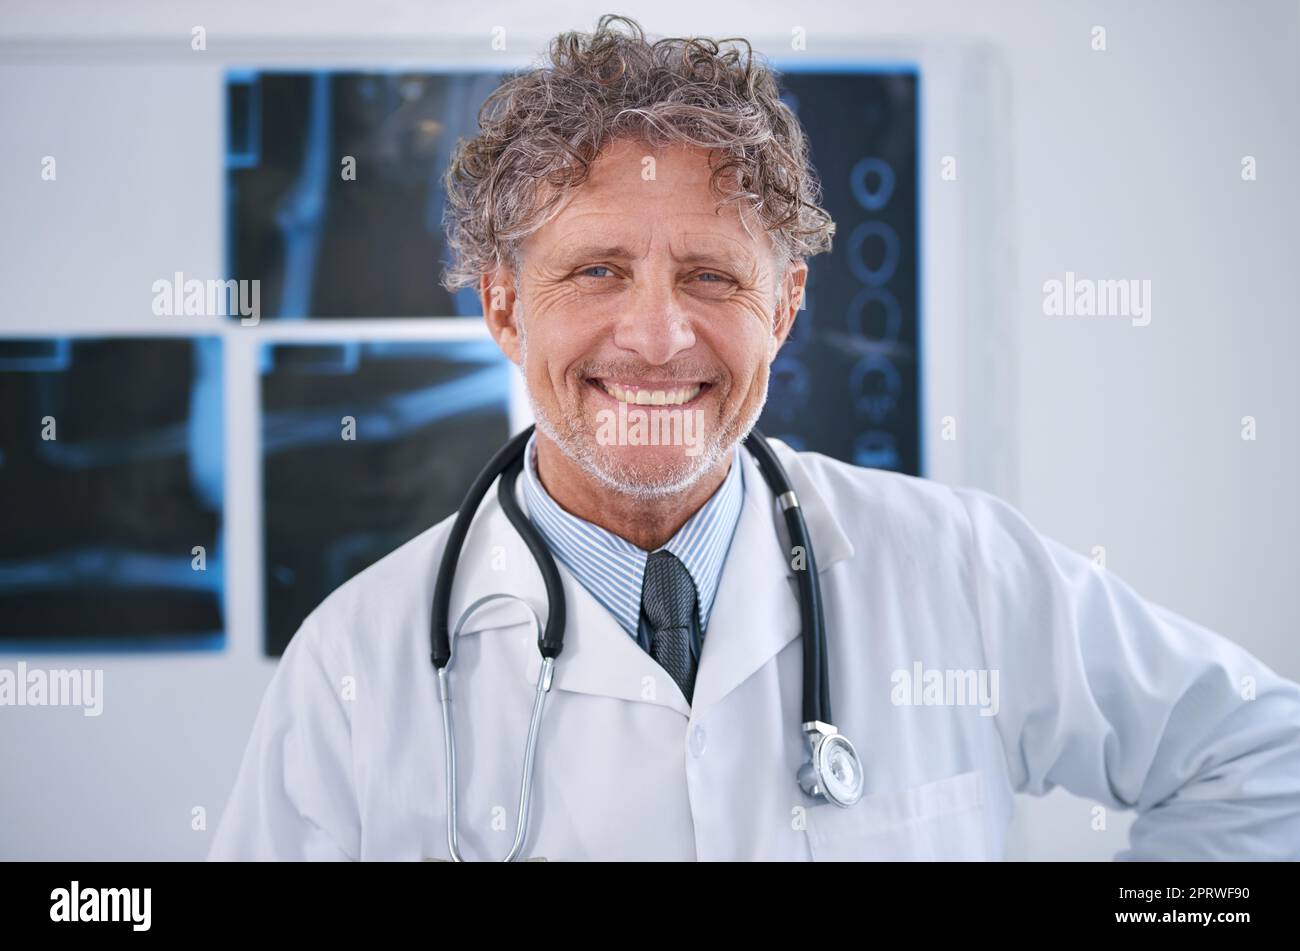 Dedicado a mejorar su calidad de vida. Retrato de un radiólogo maduro sonriente de pie en su oficina. Foto de stock